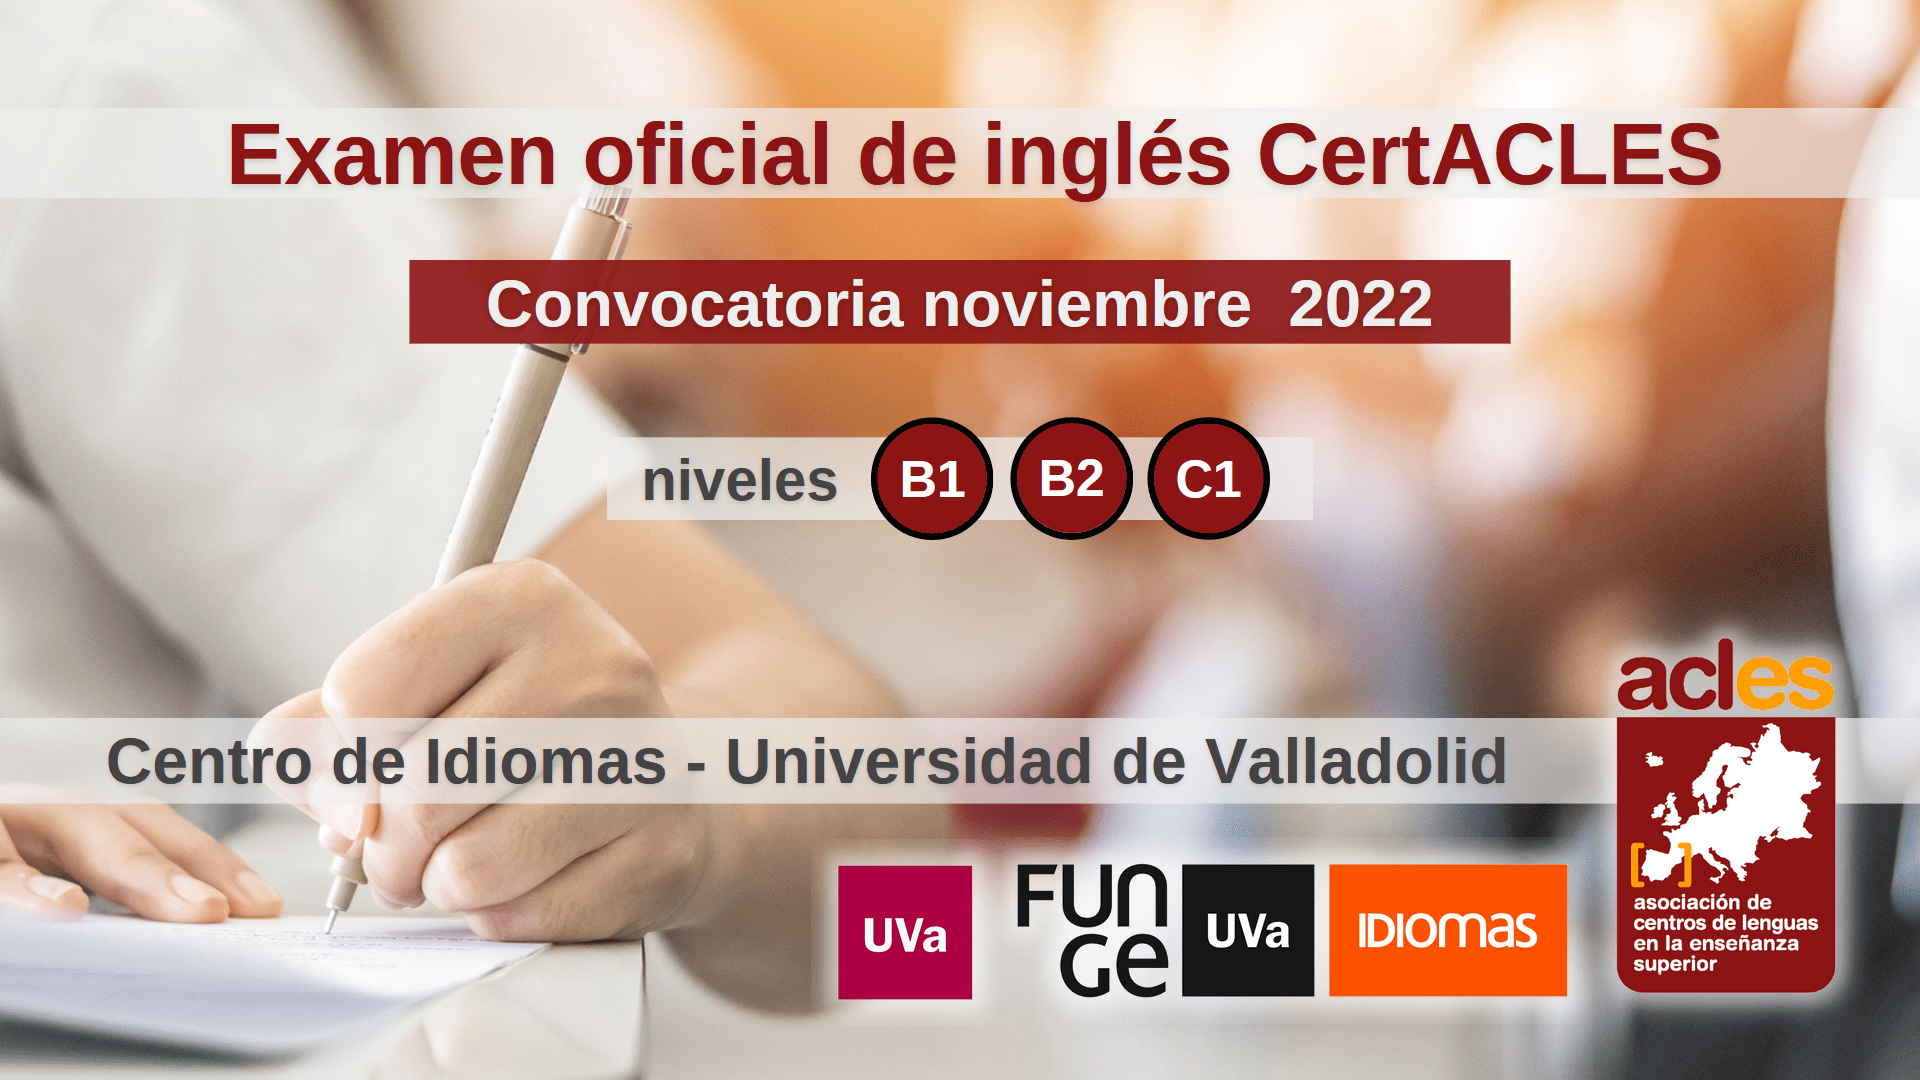 Imagen examen ingles CertACLES noviembre 2022 Universidad de Valladolid